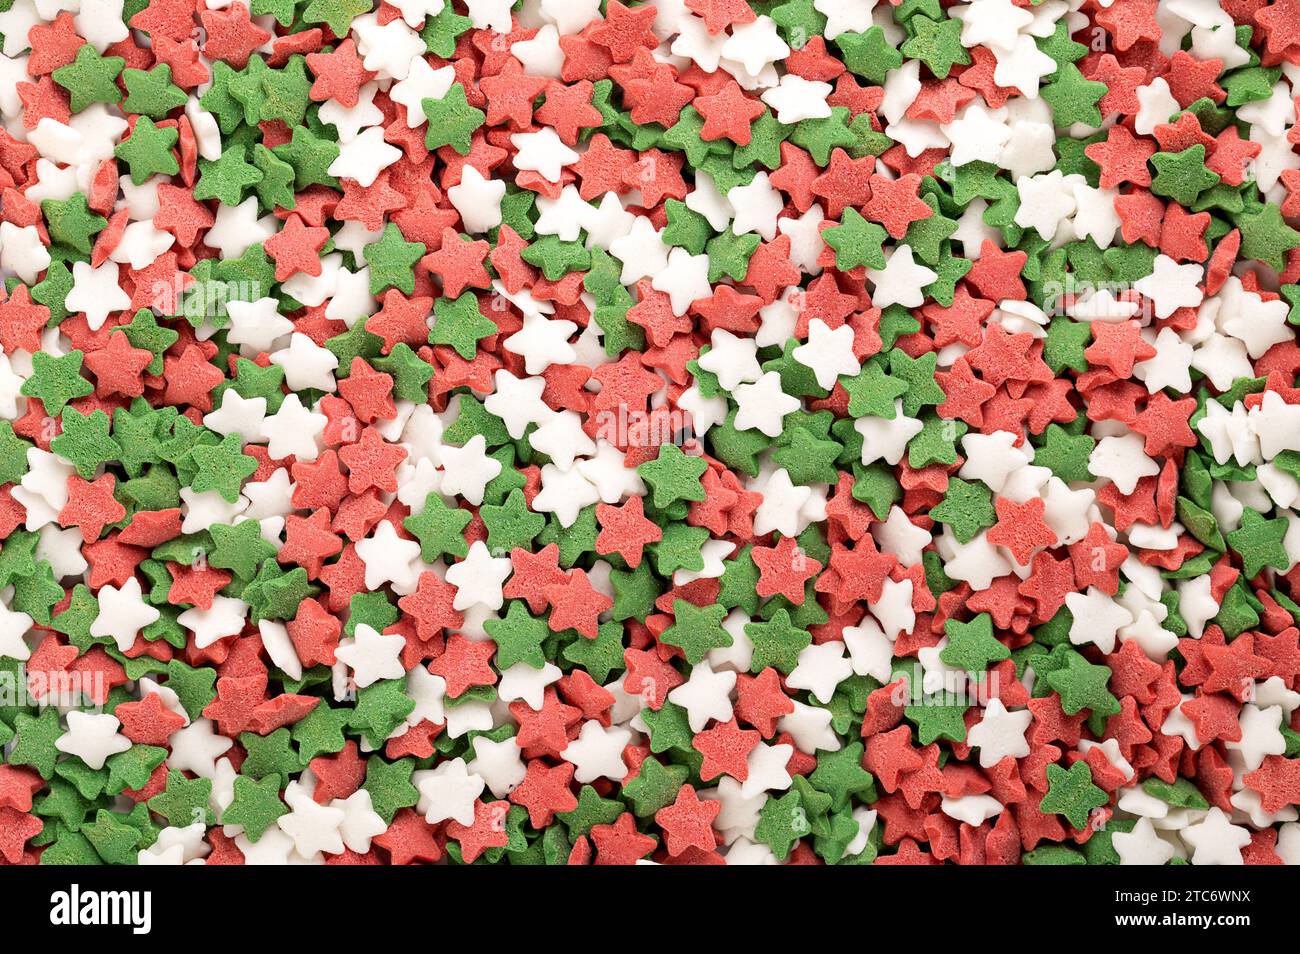 Sternförmige Zuckerstreuer. Hintergrund von grünen, roten und weißen Konfetti-Bonbons, Süßwaren aus Zucker und Reis. Stockfoto